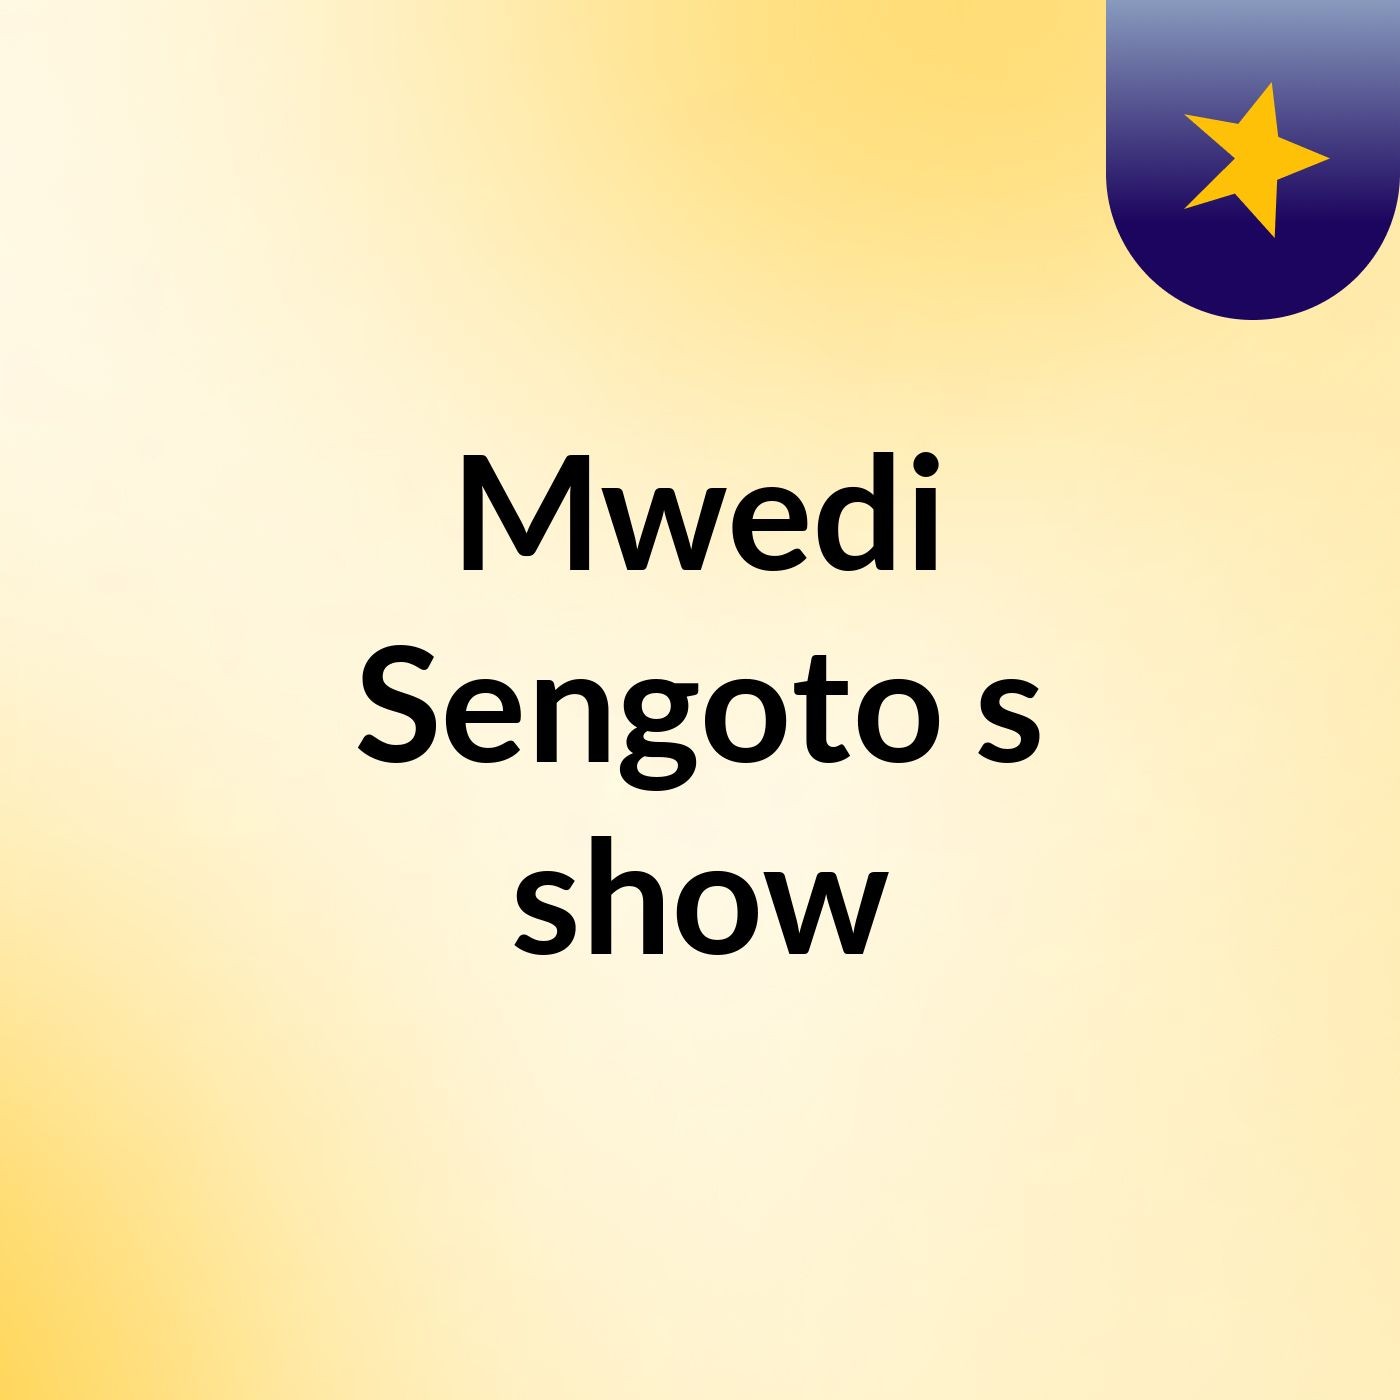 Mwedi Sengoto's show